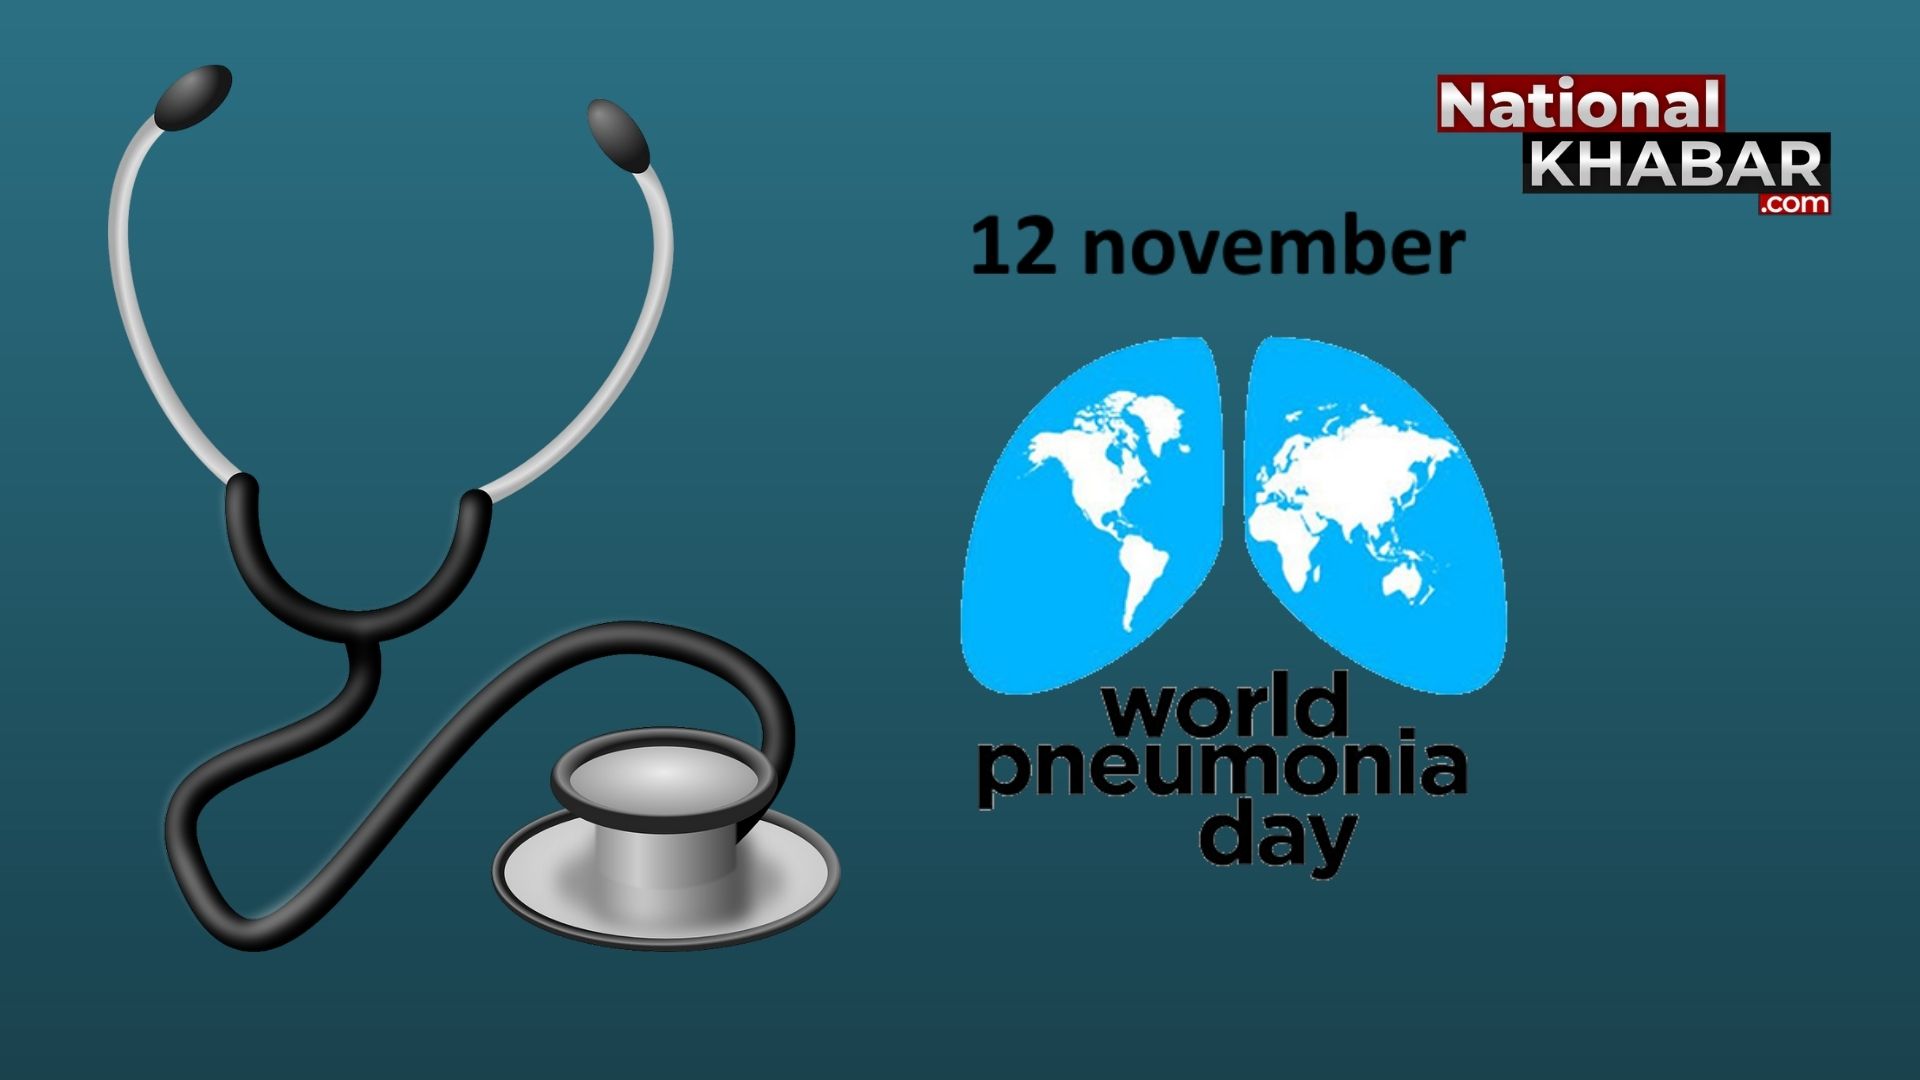 World Pneumonia Day: हर साल 12 नवंबर की तारीख को विश्व निमोनिया दिवस के रूप में मनाया जाता है, पढ़िए इस दिन से जुड़ी महत्वपूर्ण बातें।